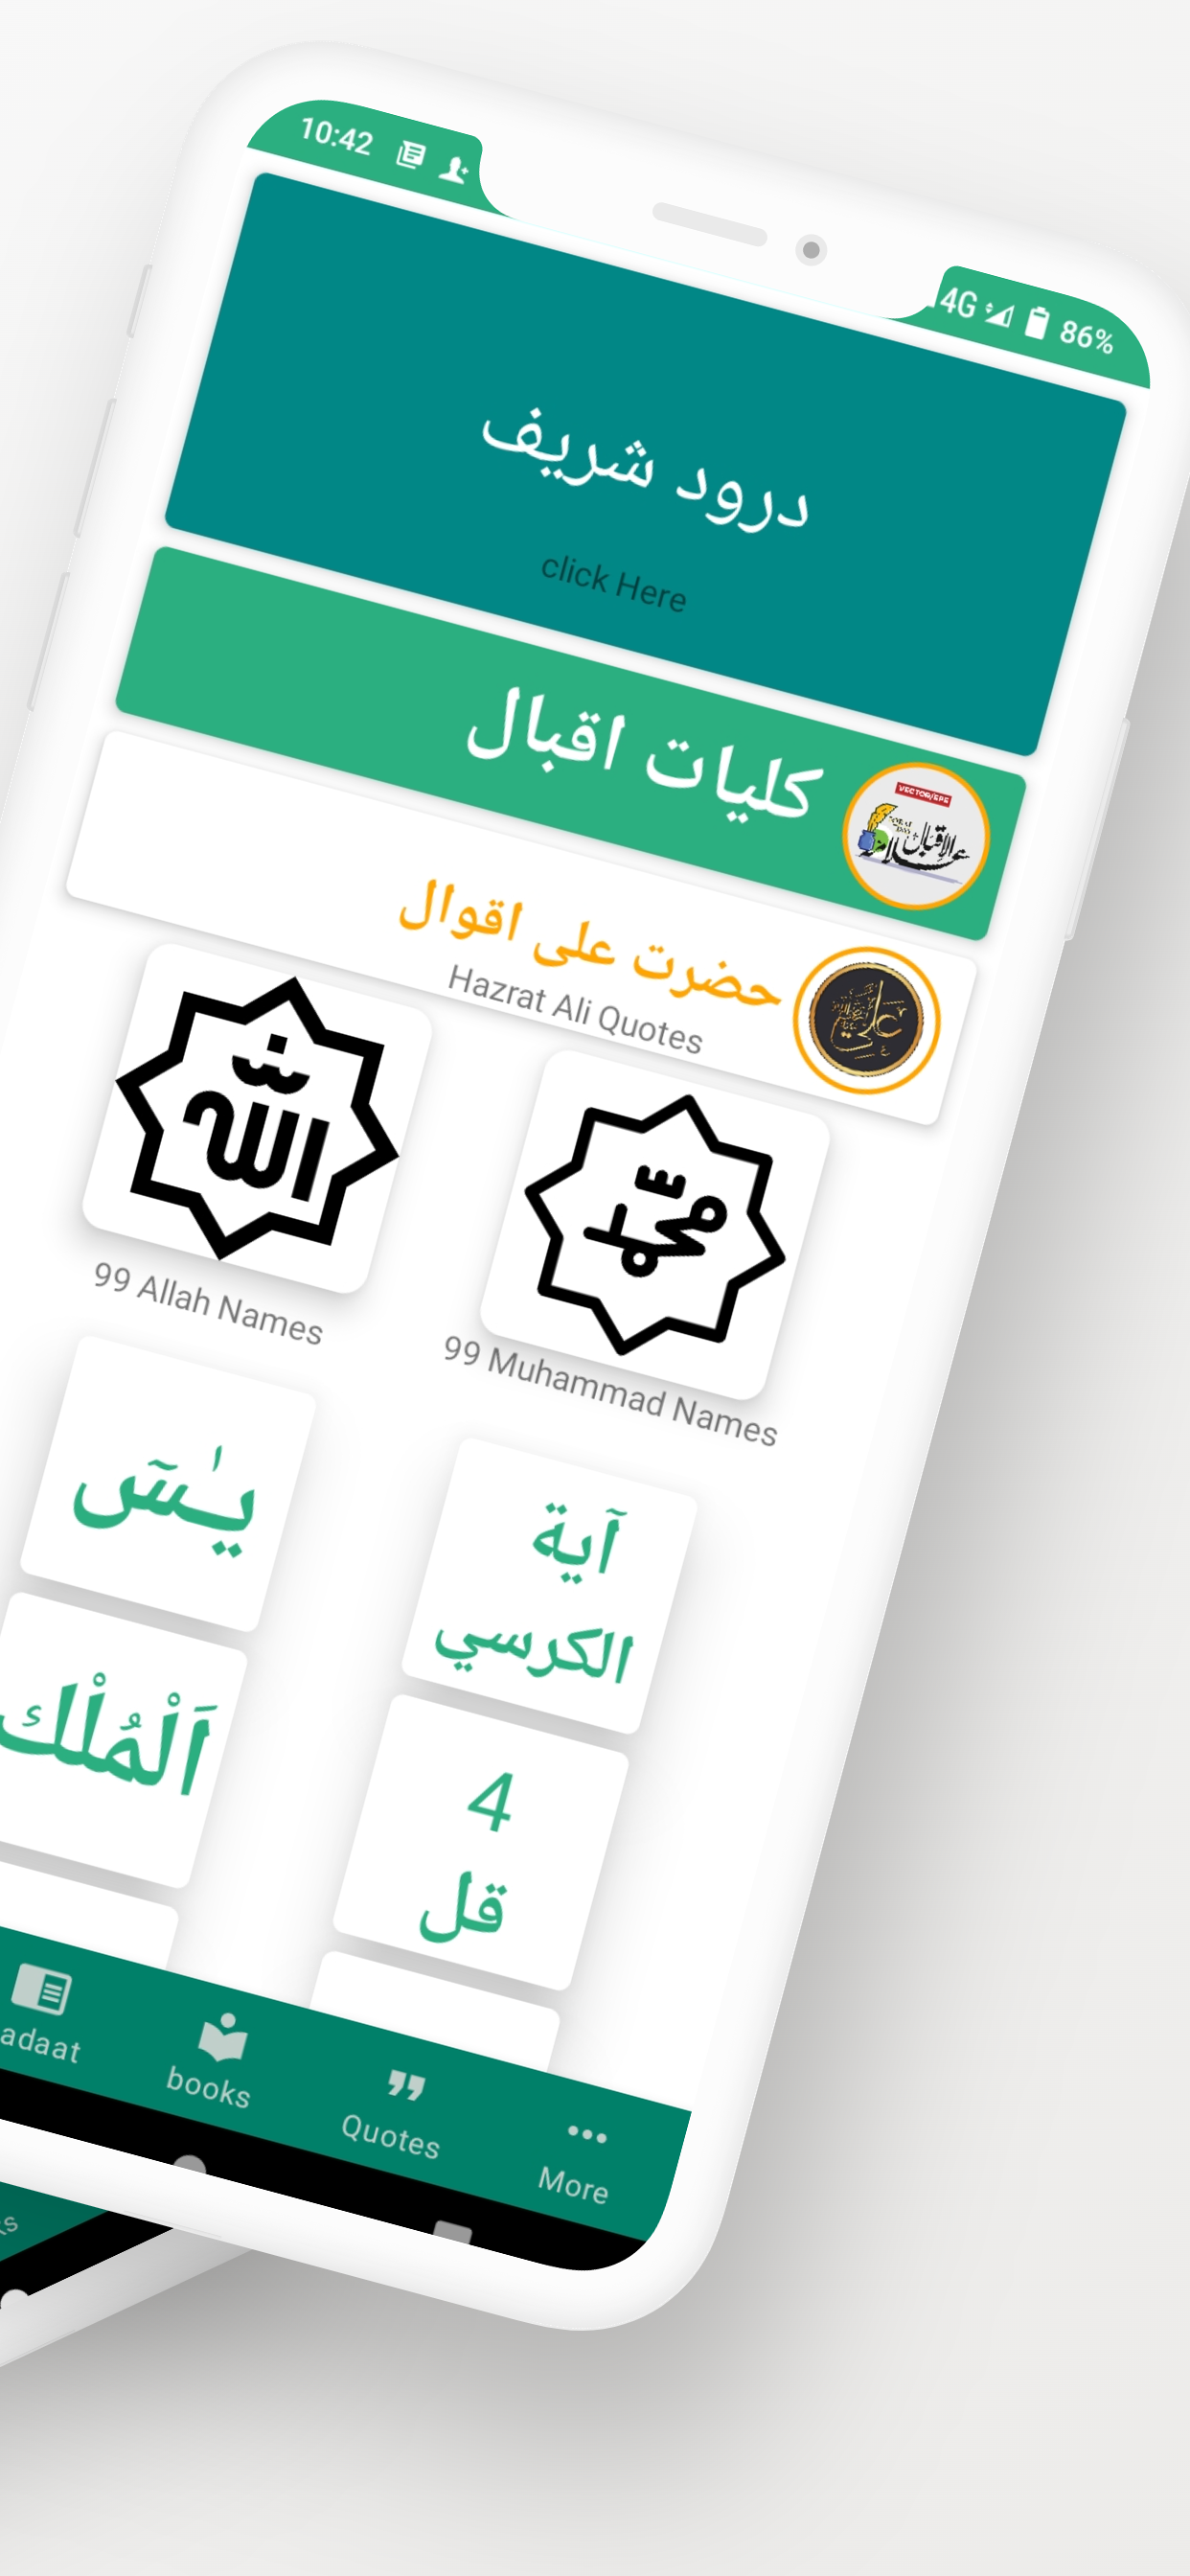 Islamicque: Muslims Guide App